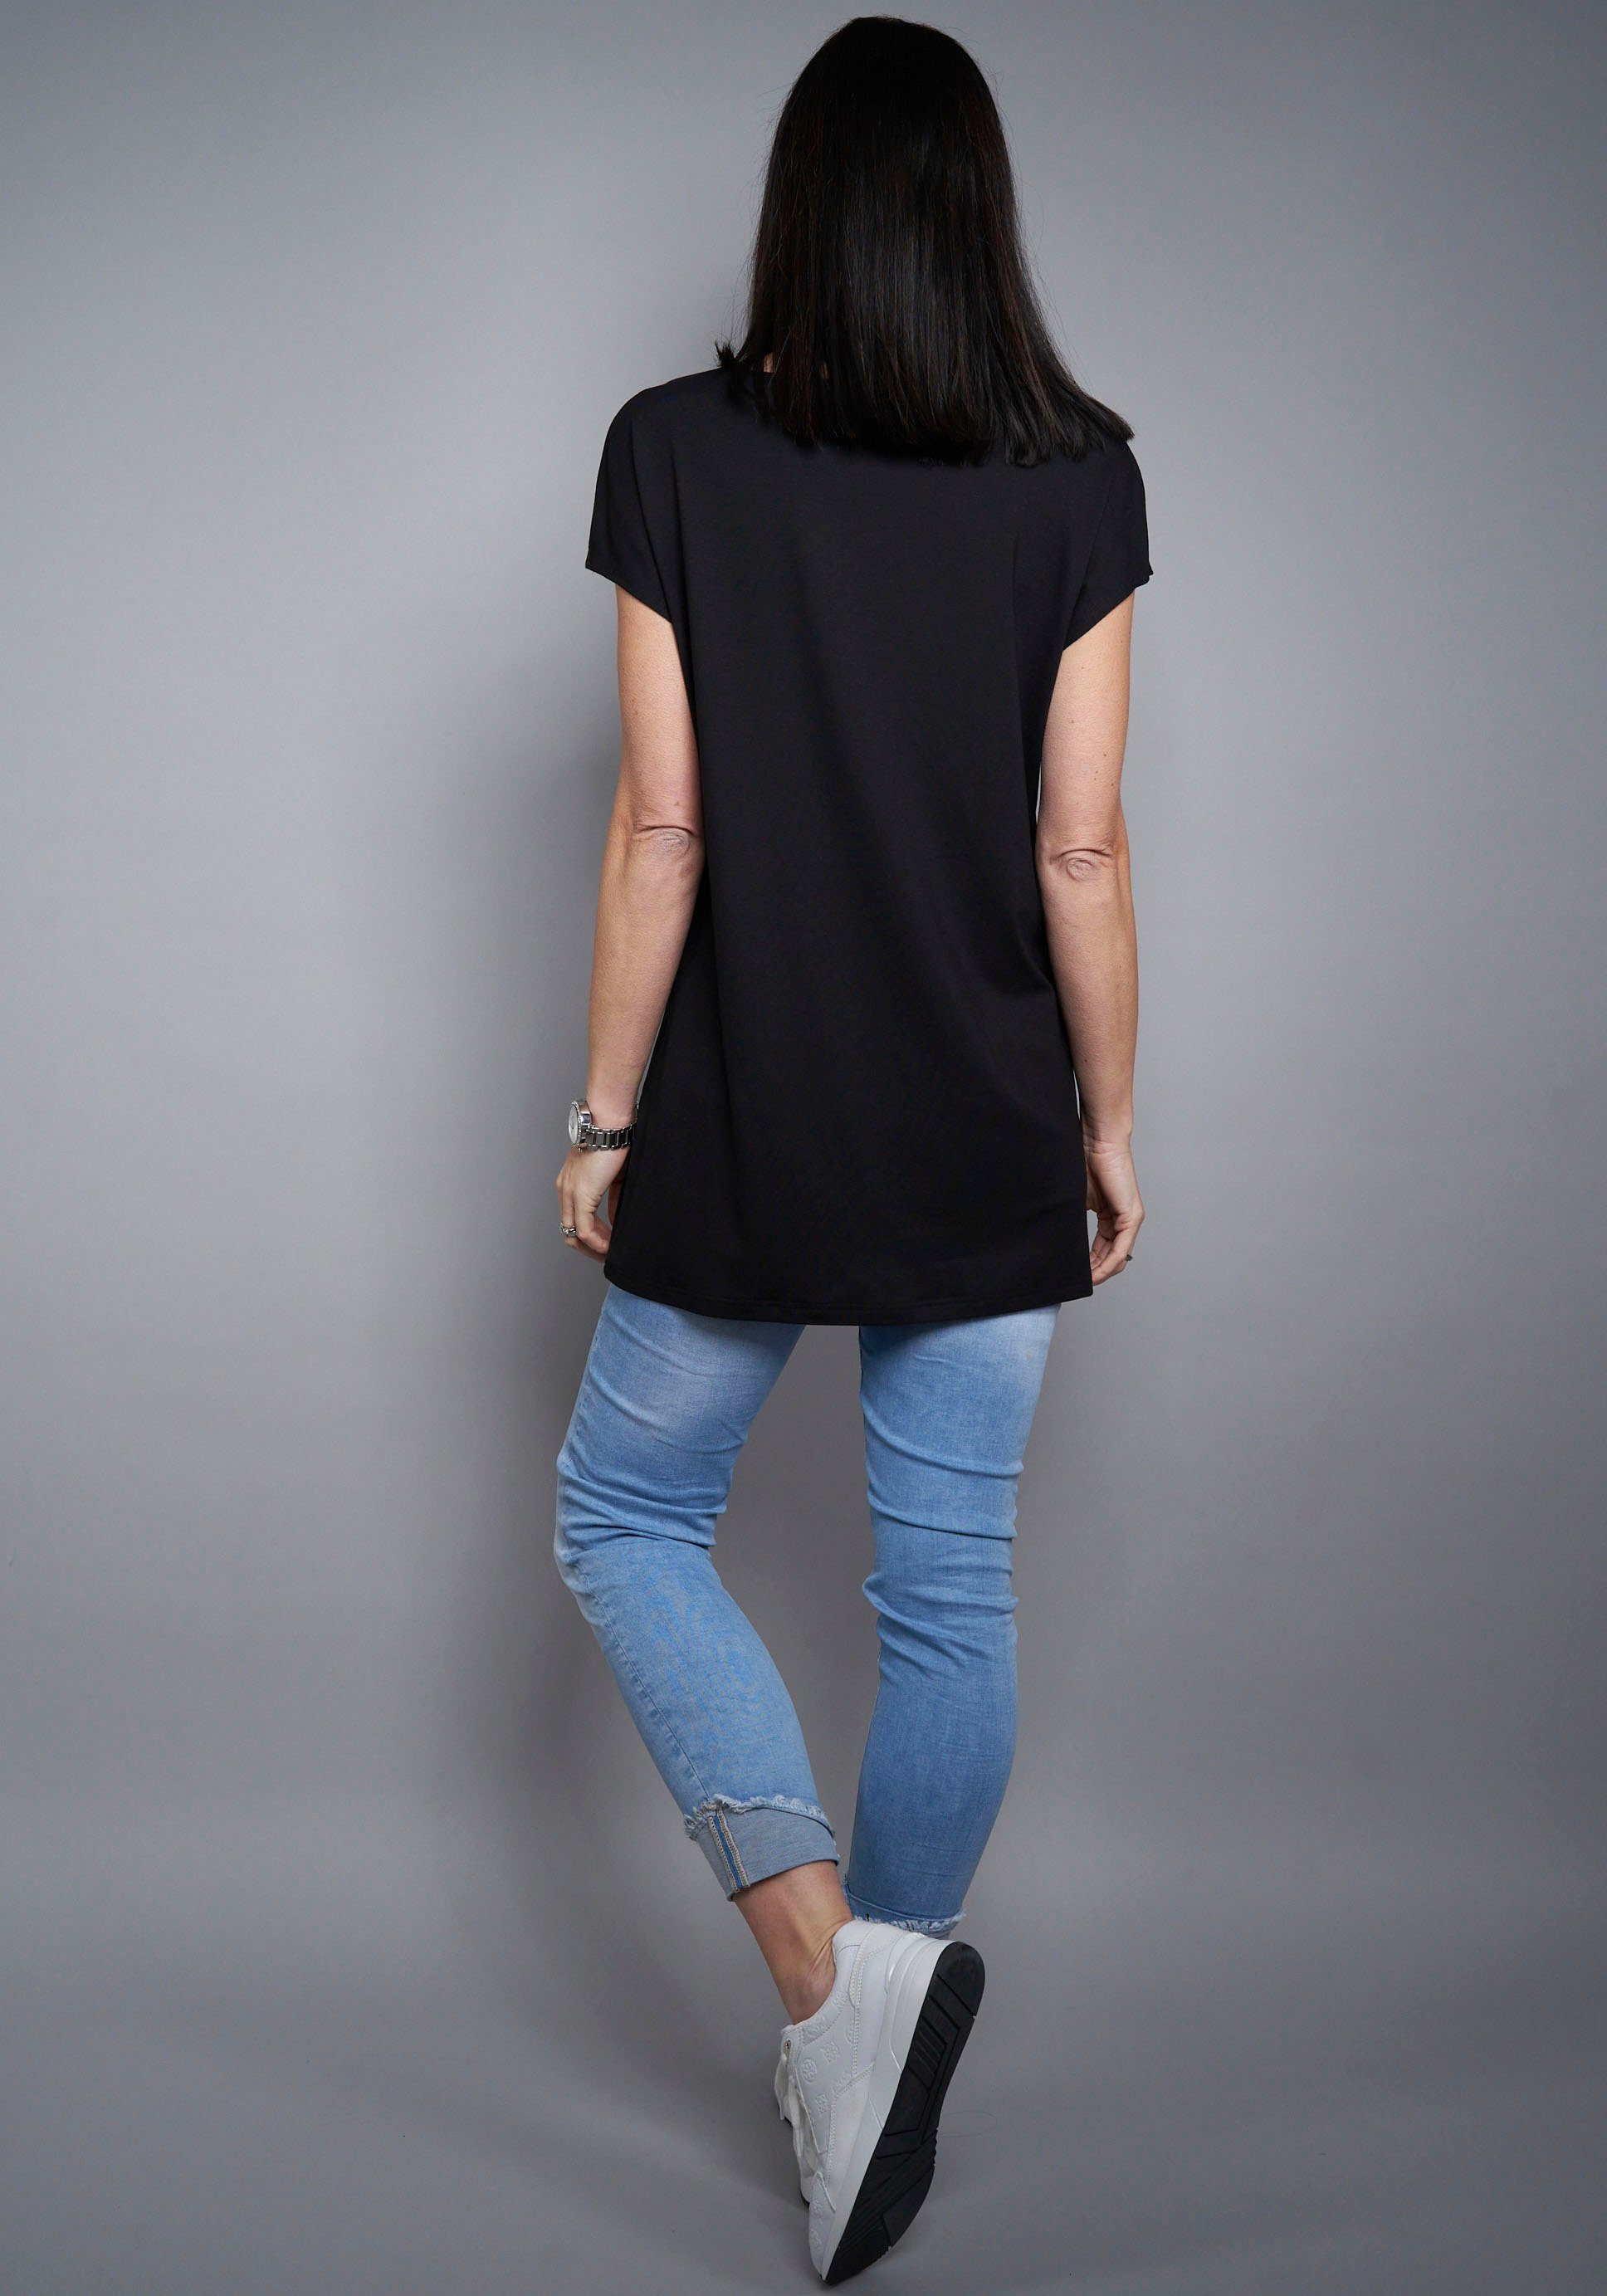 Design Seidel schwarz in schlichtem Longshirt Moden